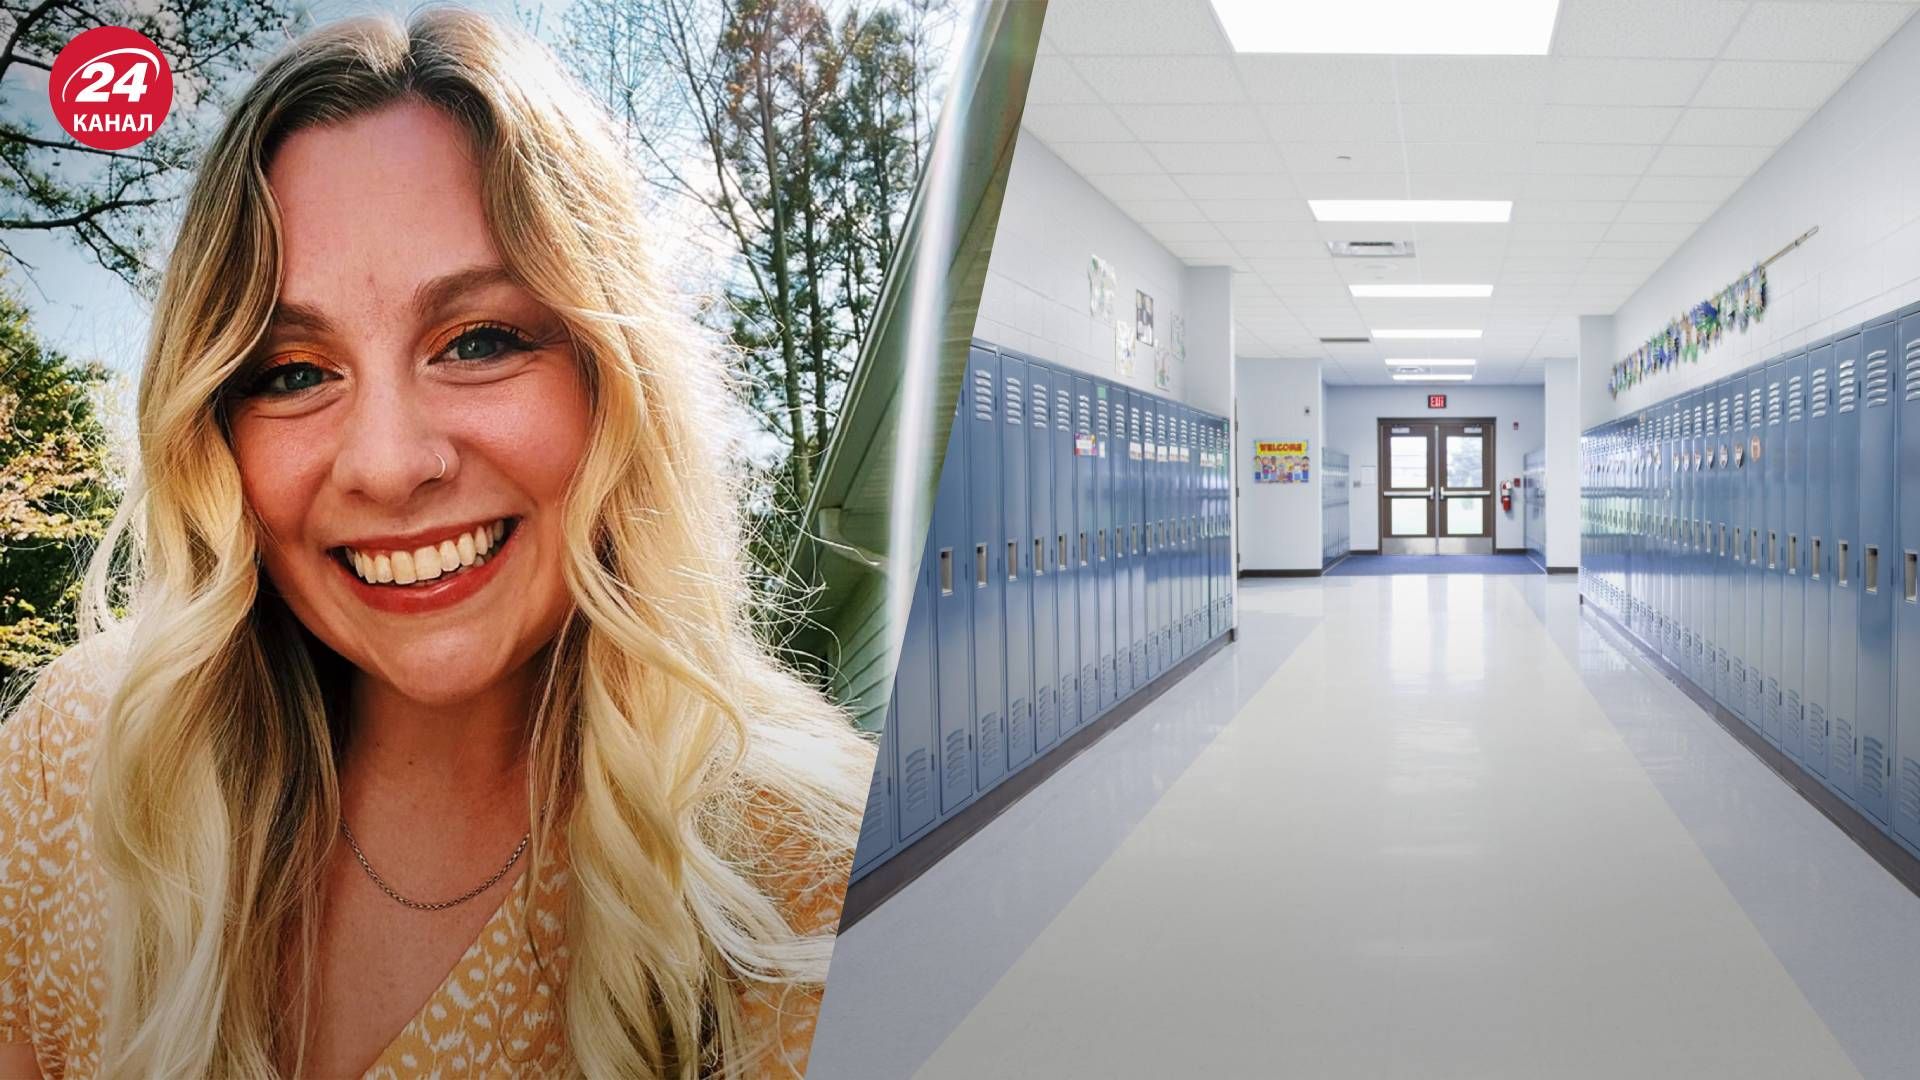 Стрельба в школе США – учительница Эбби Цвернер подала иск против руководства